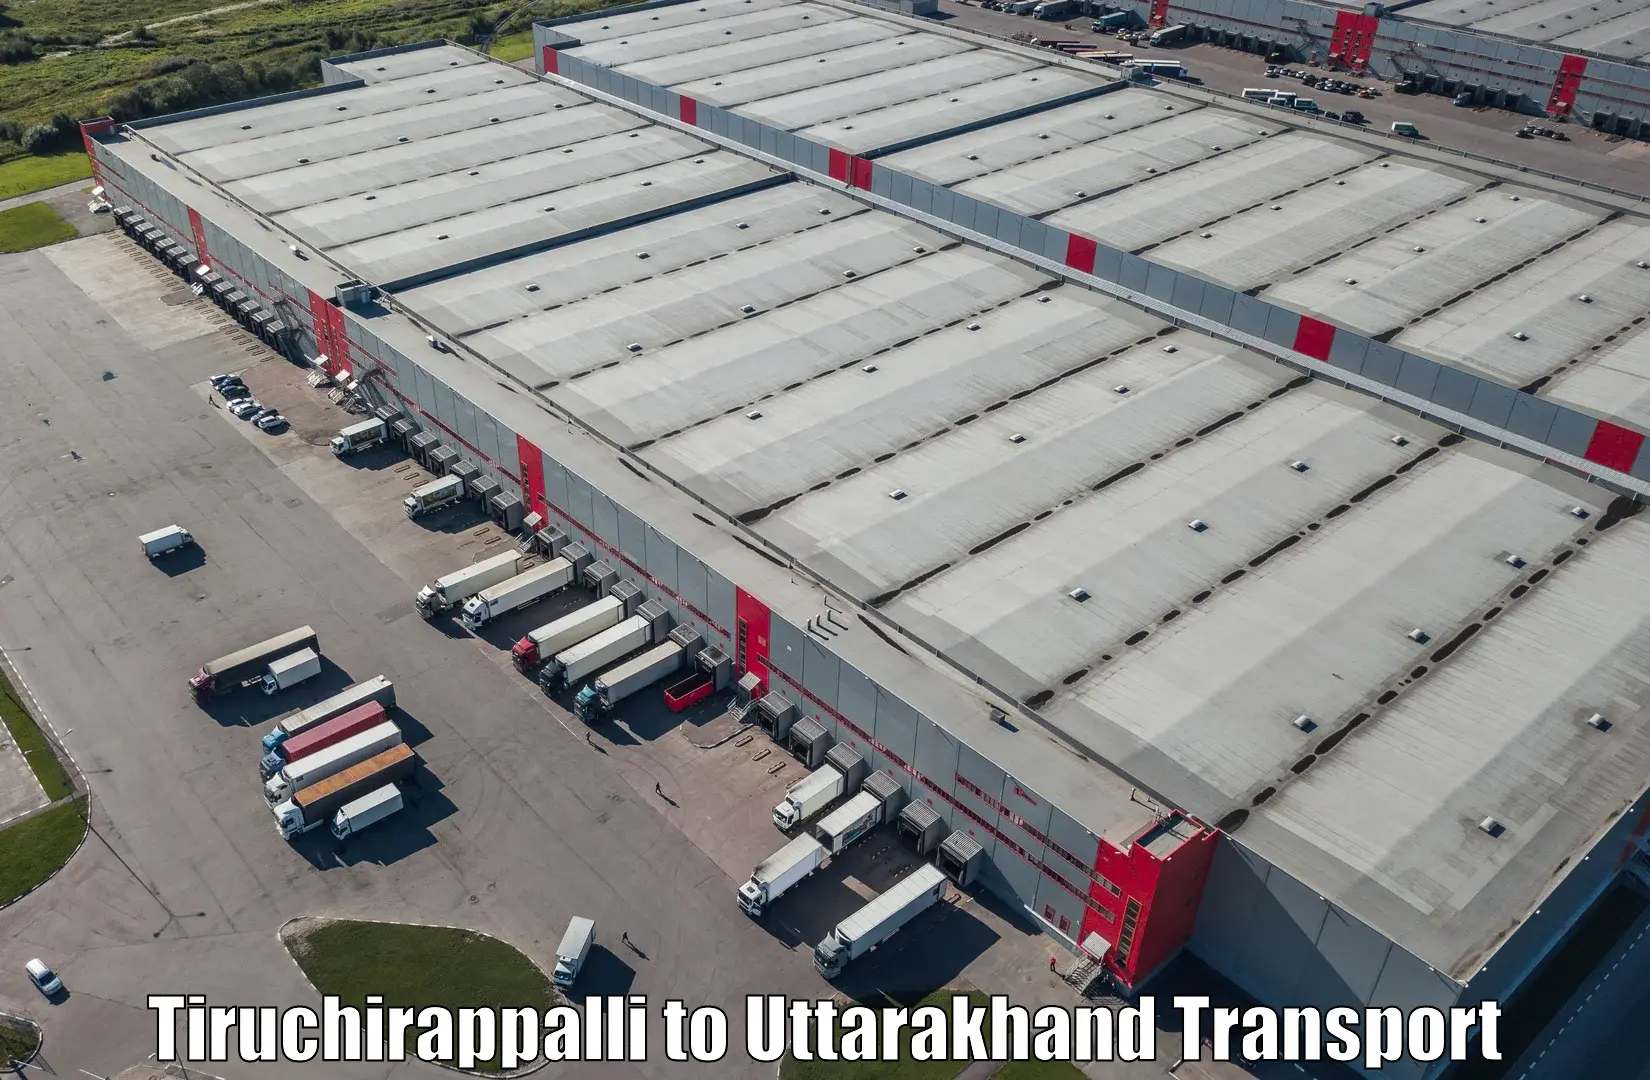 Truck transport companies in India Tiruchirappalli to Rishikesh